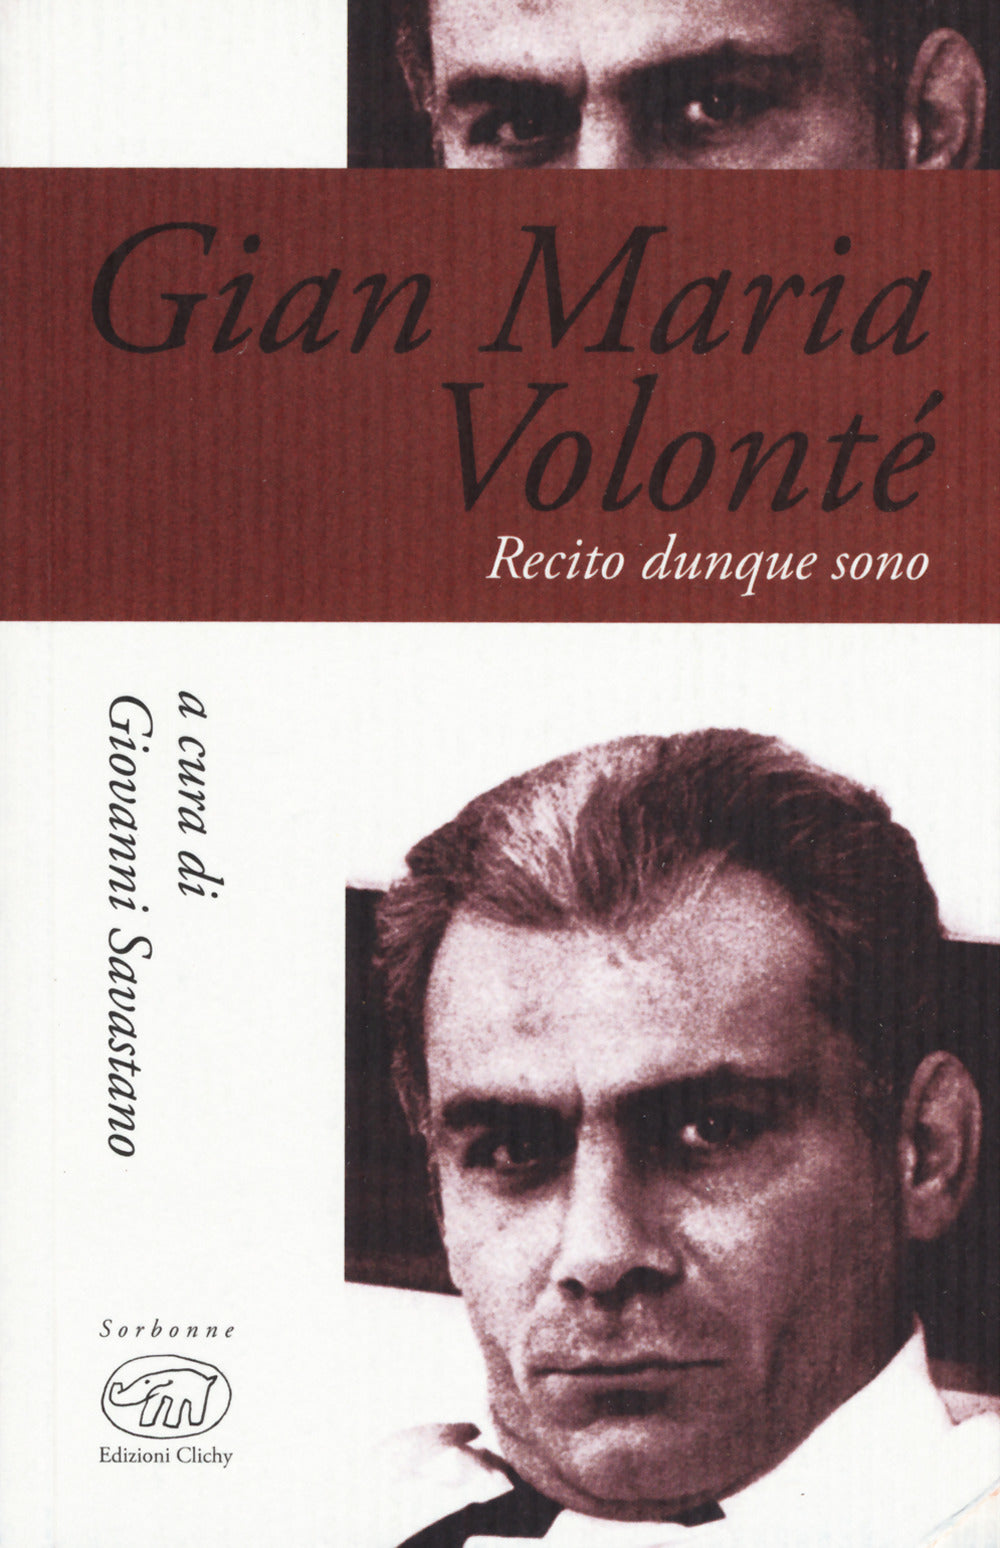 Gian Maria Volonté. Recito dunque sono.